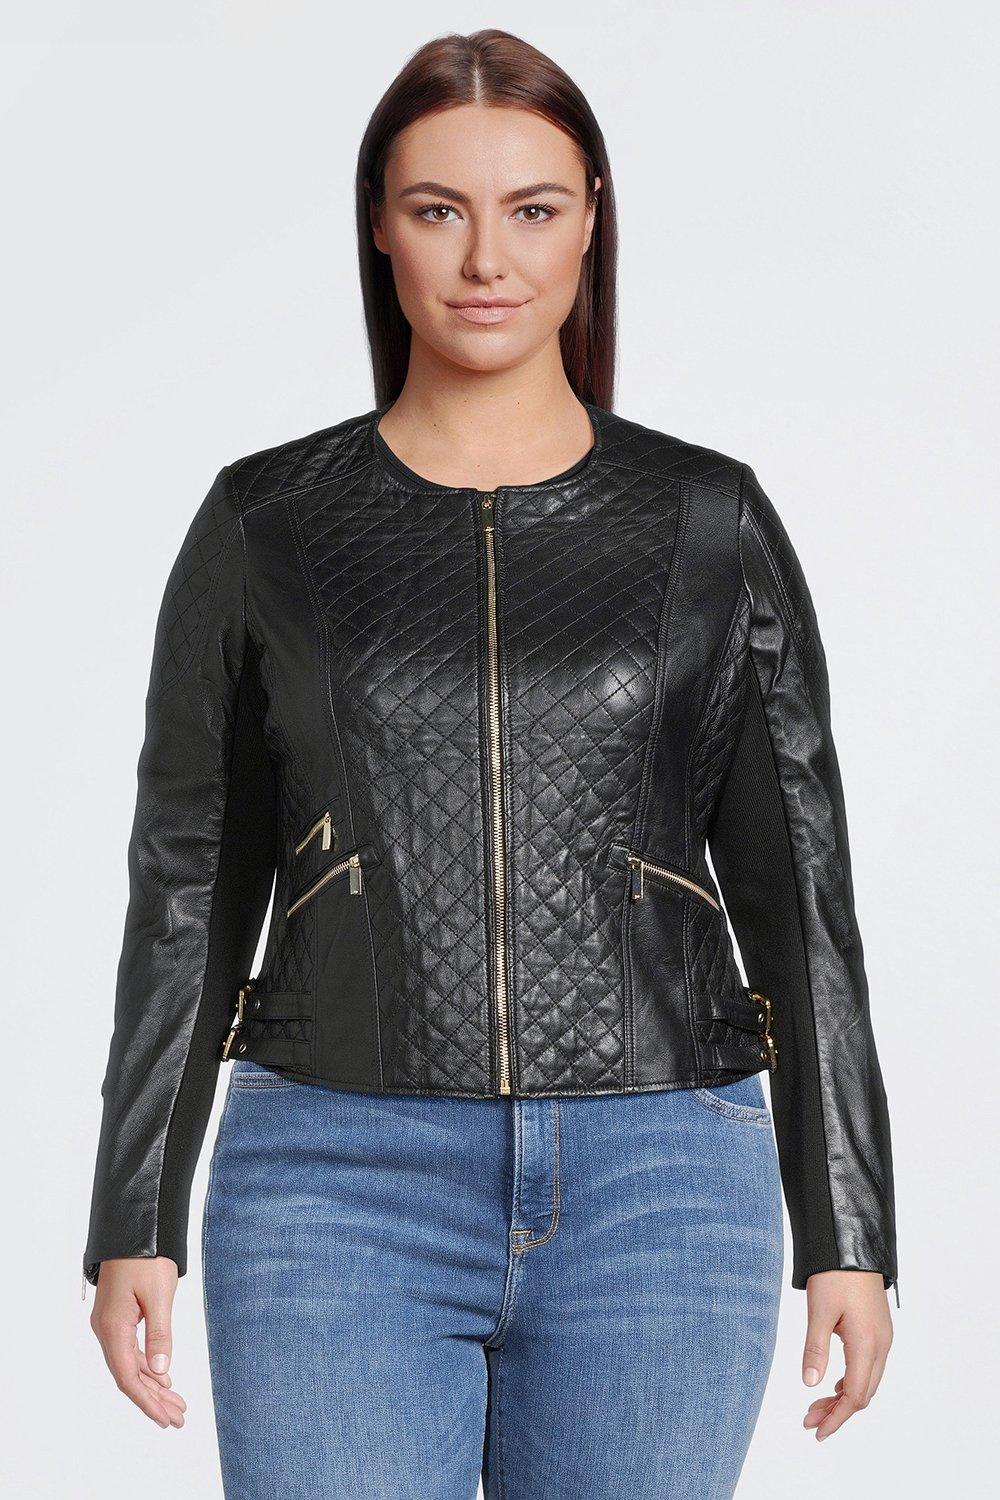 Mandag Tilbagebetale mount Plus Size Leather Quilted Jacket | Karen Millen